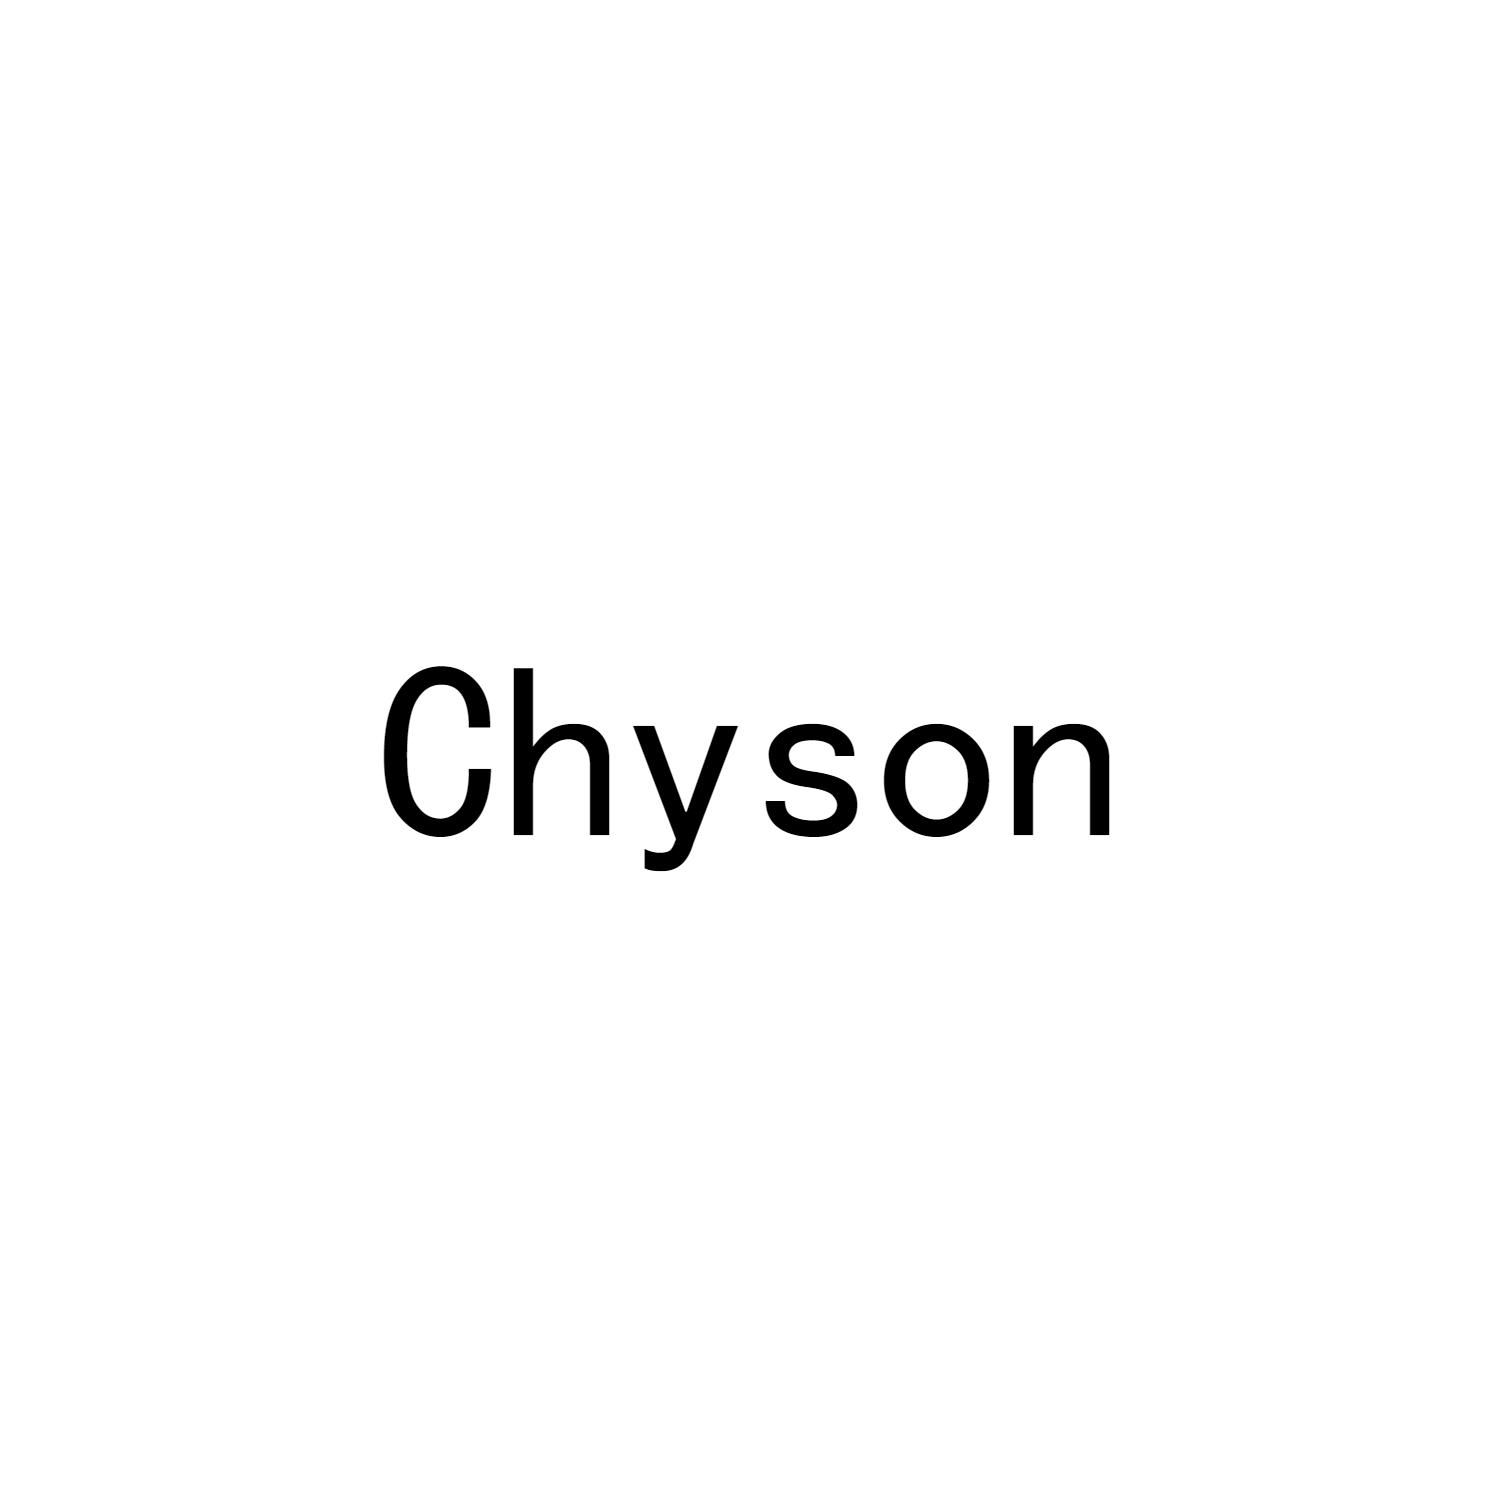 Chyson